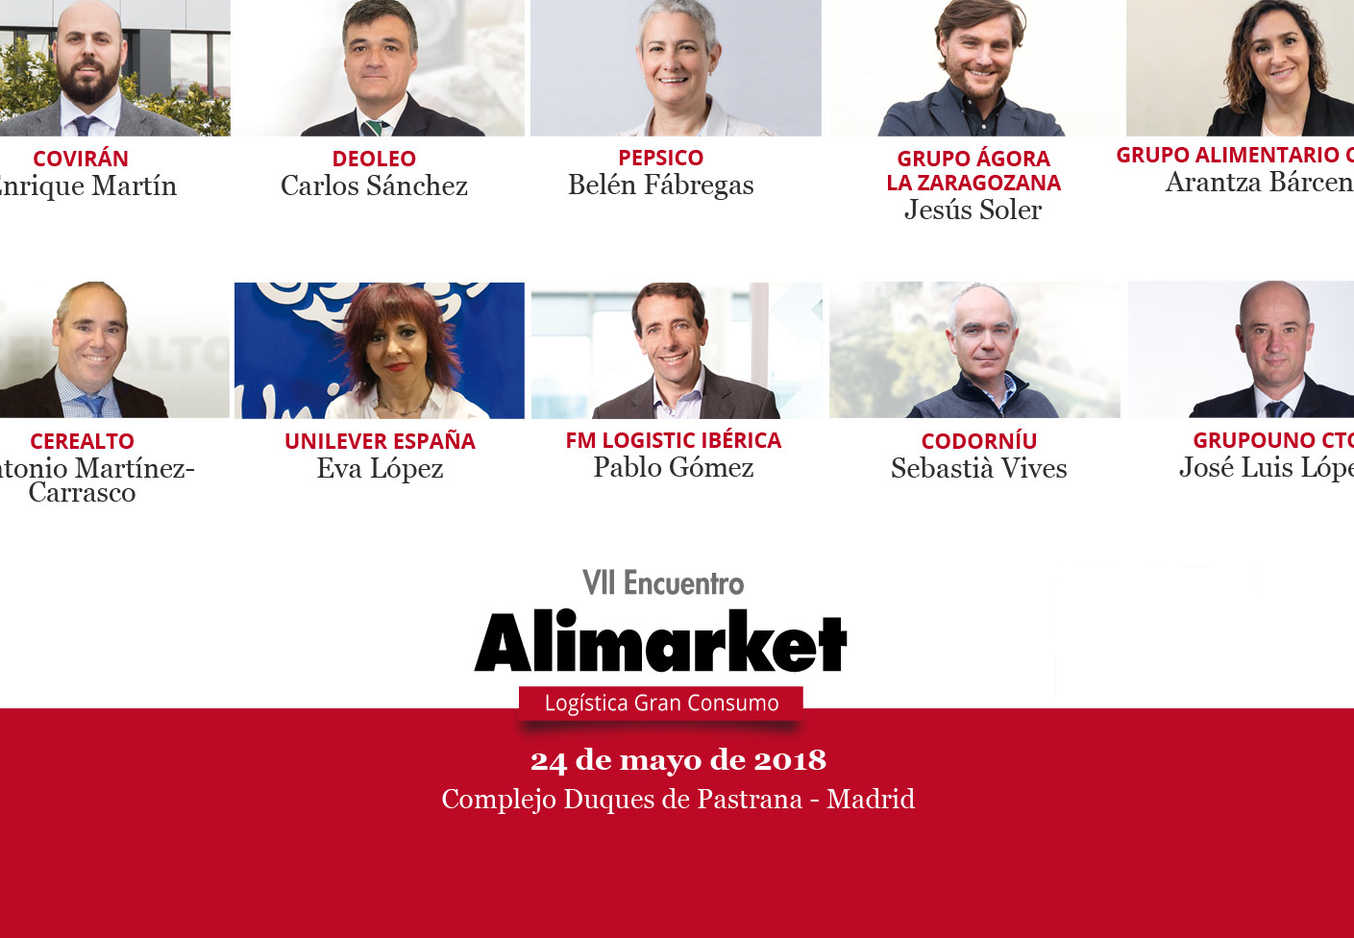 VII Encuentro Alimarket Logística Gran Consumo- 24 de mayo Madrid